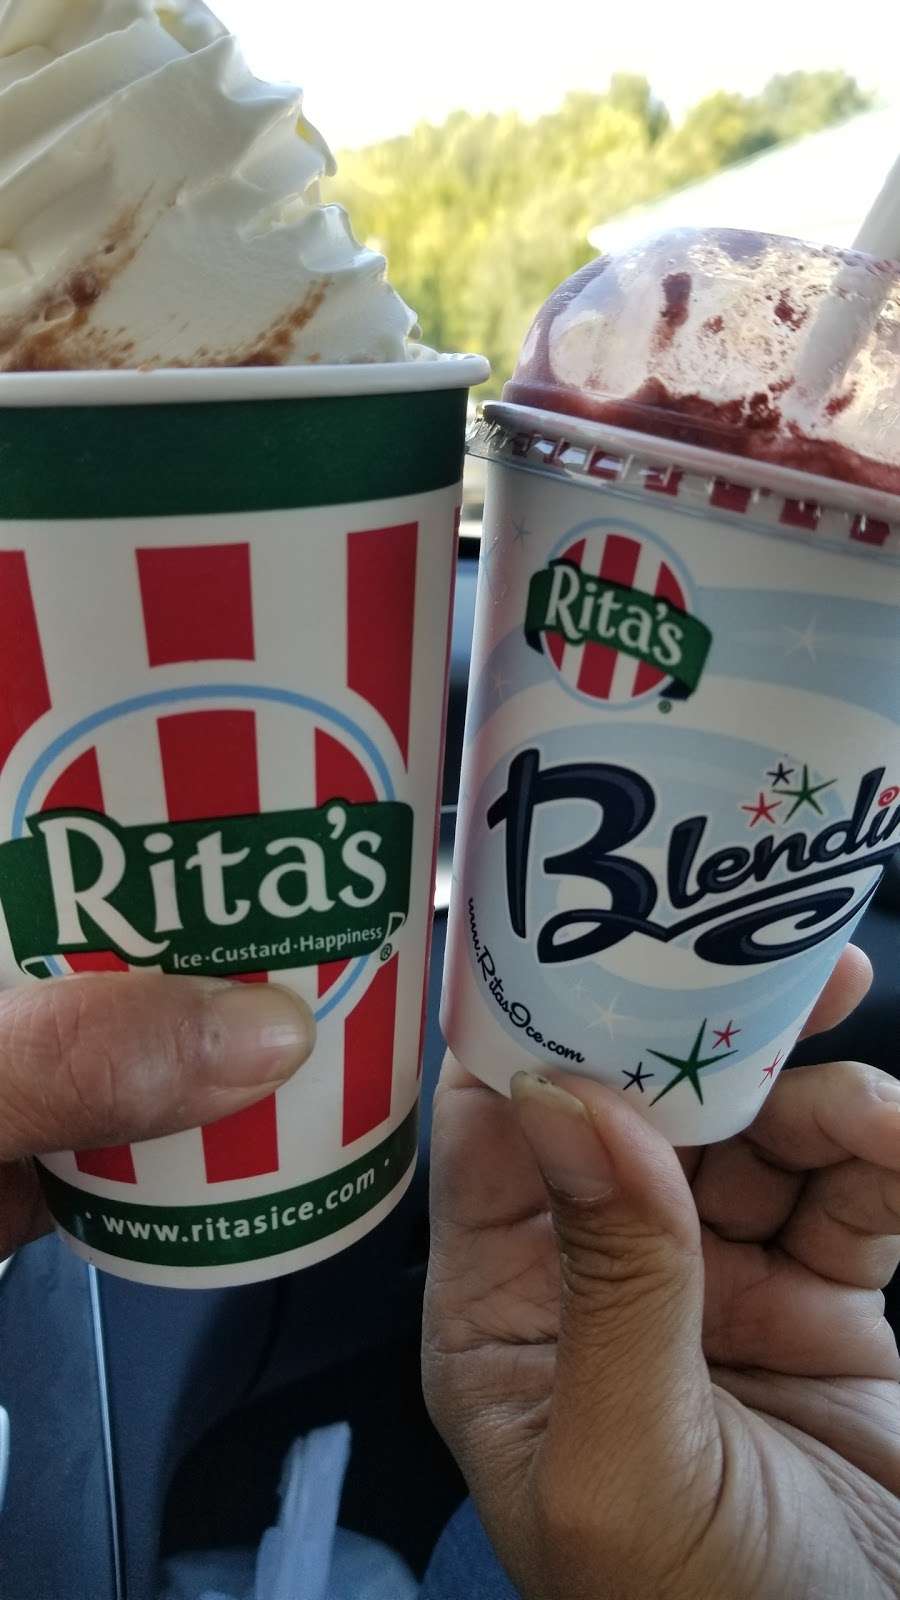 Ritas Italian Ice & Frozen Custard | 277 N Broadway, Pennsville, NJ 08070 | Phone: (856) 678-5200